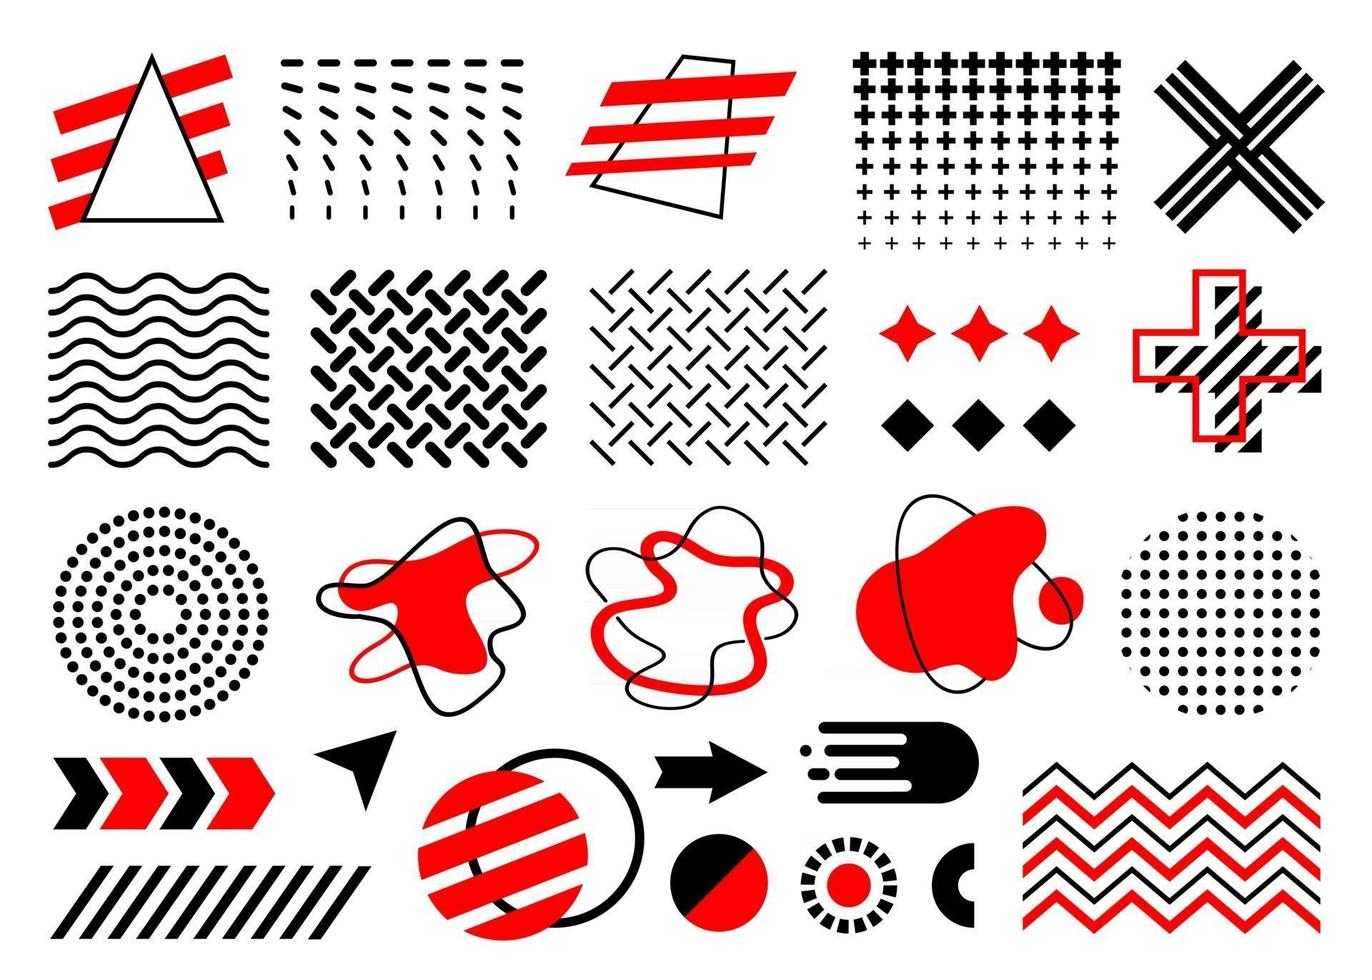 conjunto de memphis rojo y negro, colección de vectores de formas planas geométricas abstractas, círculo, flechas, ameba, gradiente de puntos, ondas, zigzags, bola de fuego, aislado sobre fondo blanco